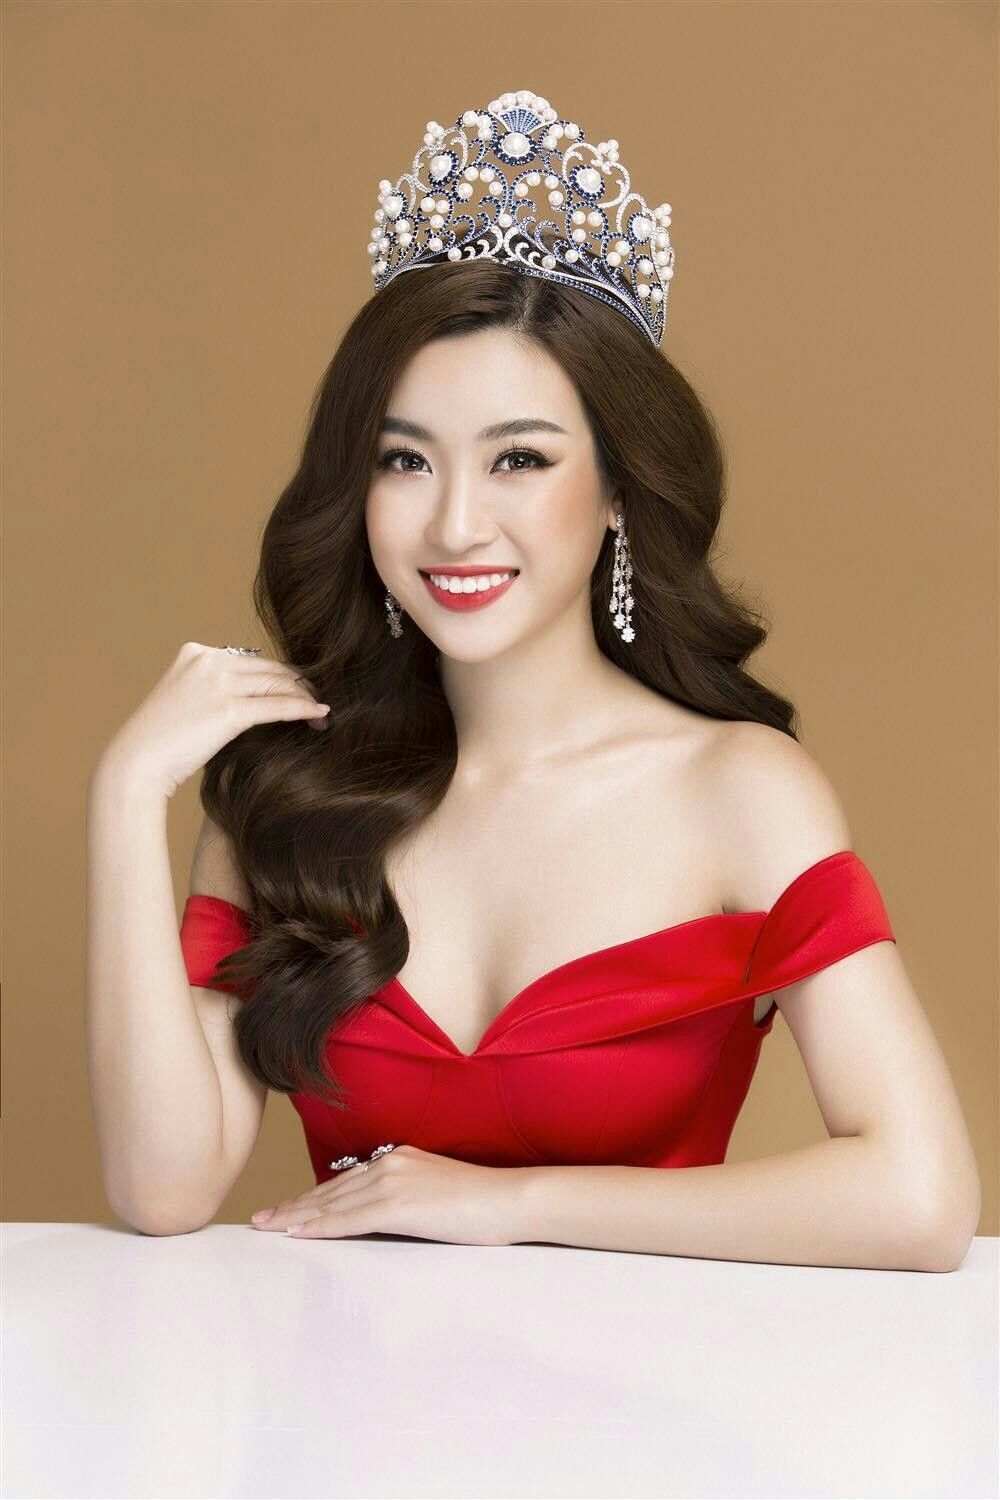  
Vương miện của Đỗ Mỹ Linh - Hoa hậu Việt Nam 2016. (Ảnh: FBNV)